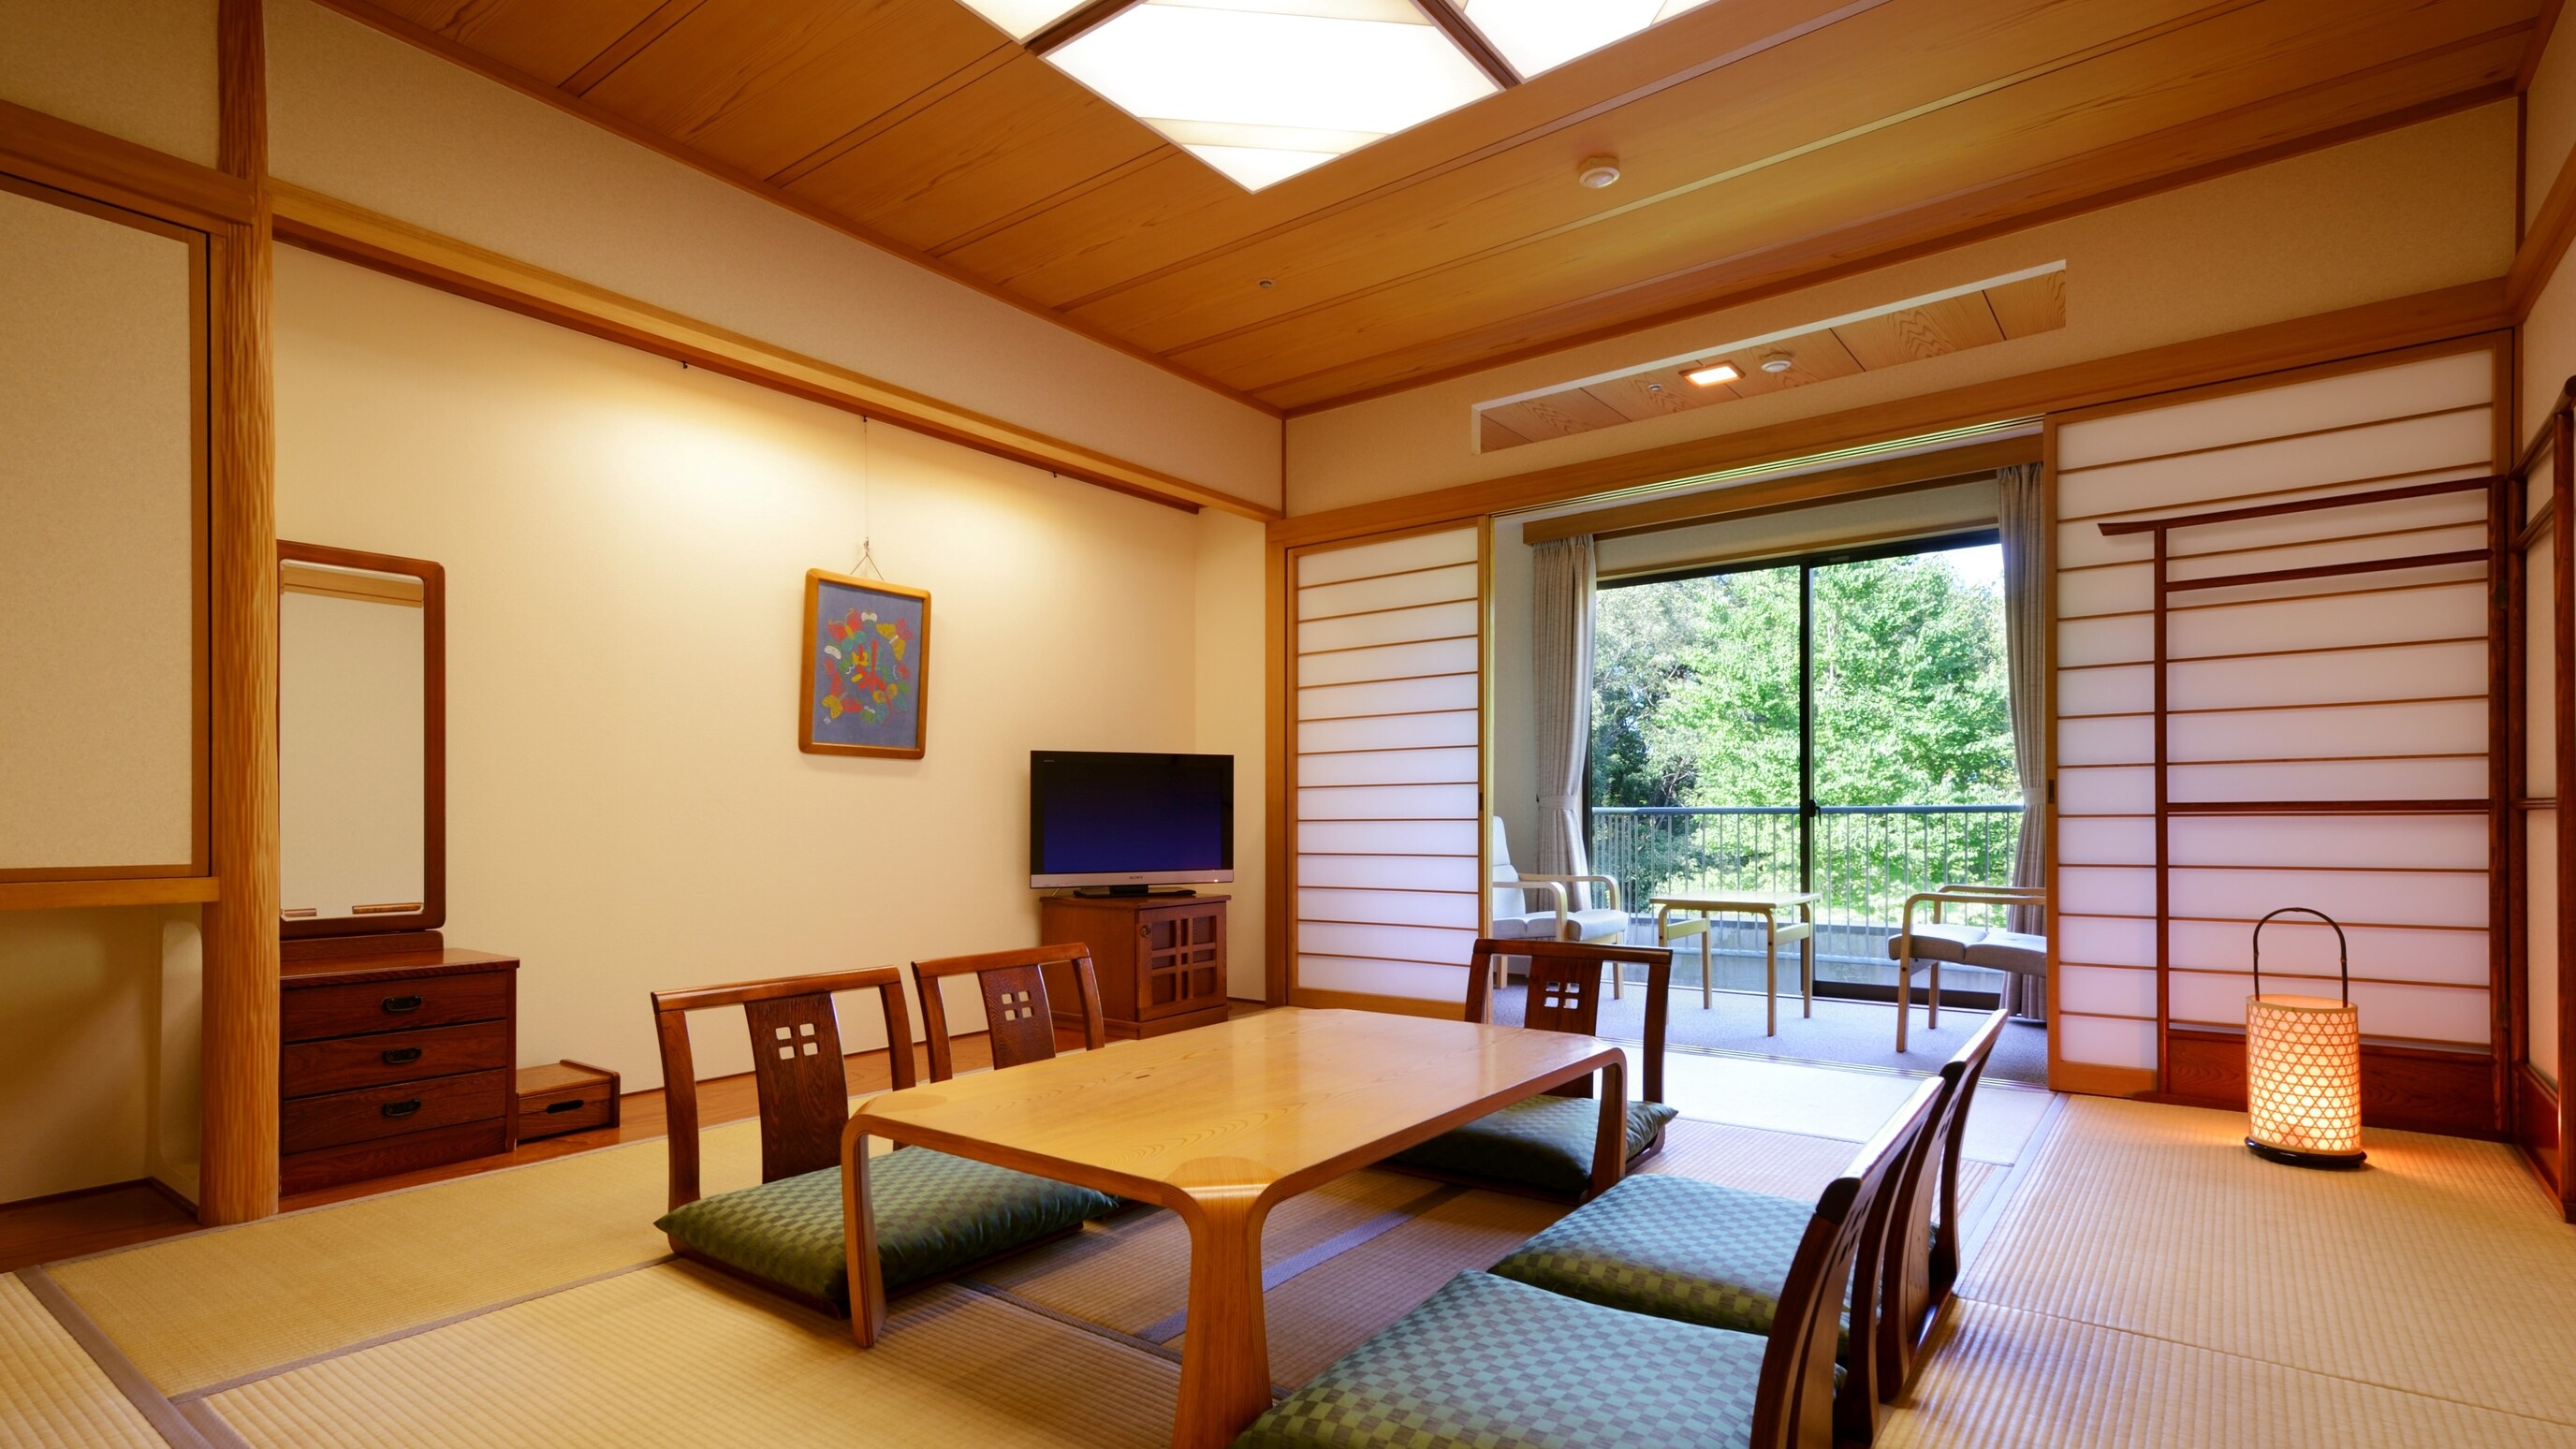 ชั้น 1 *ห้องสไตล์ญี่ปุ่นขนาด 10 เสื่อทาทามิ (พร้อมอ่างอาบน้ำและห้องสุขา)